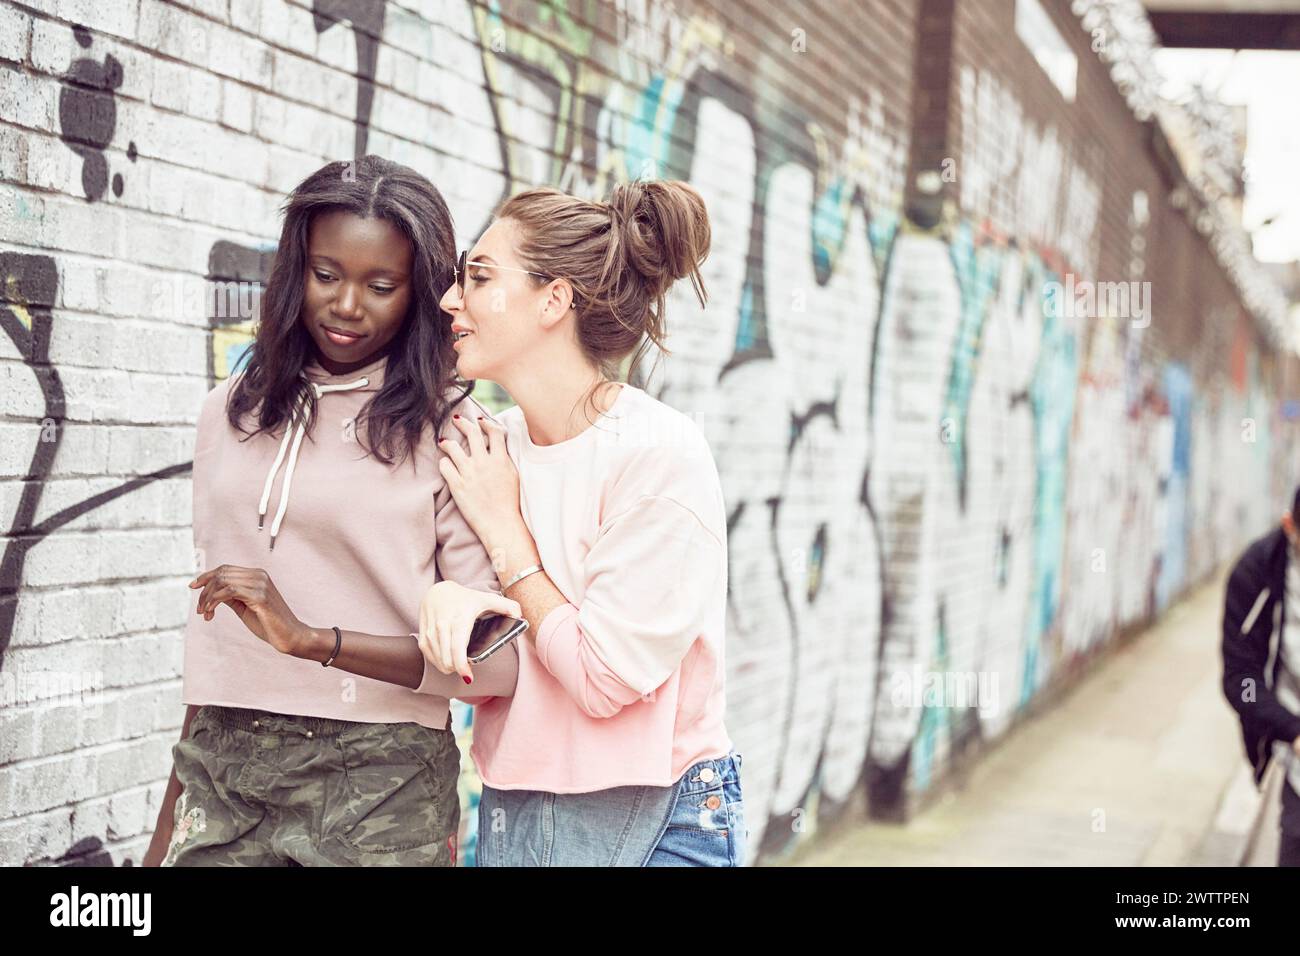 Zwei Frauen, die sich an einer Graffiti-Wand unterhalten Stockfoto